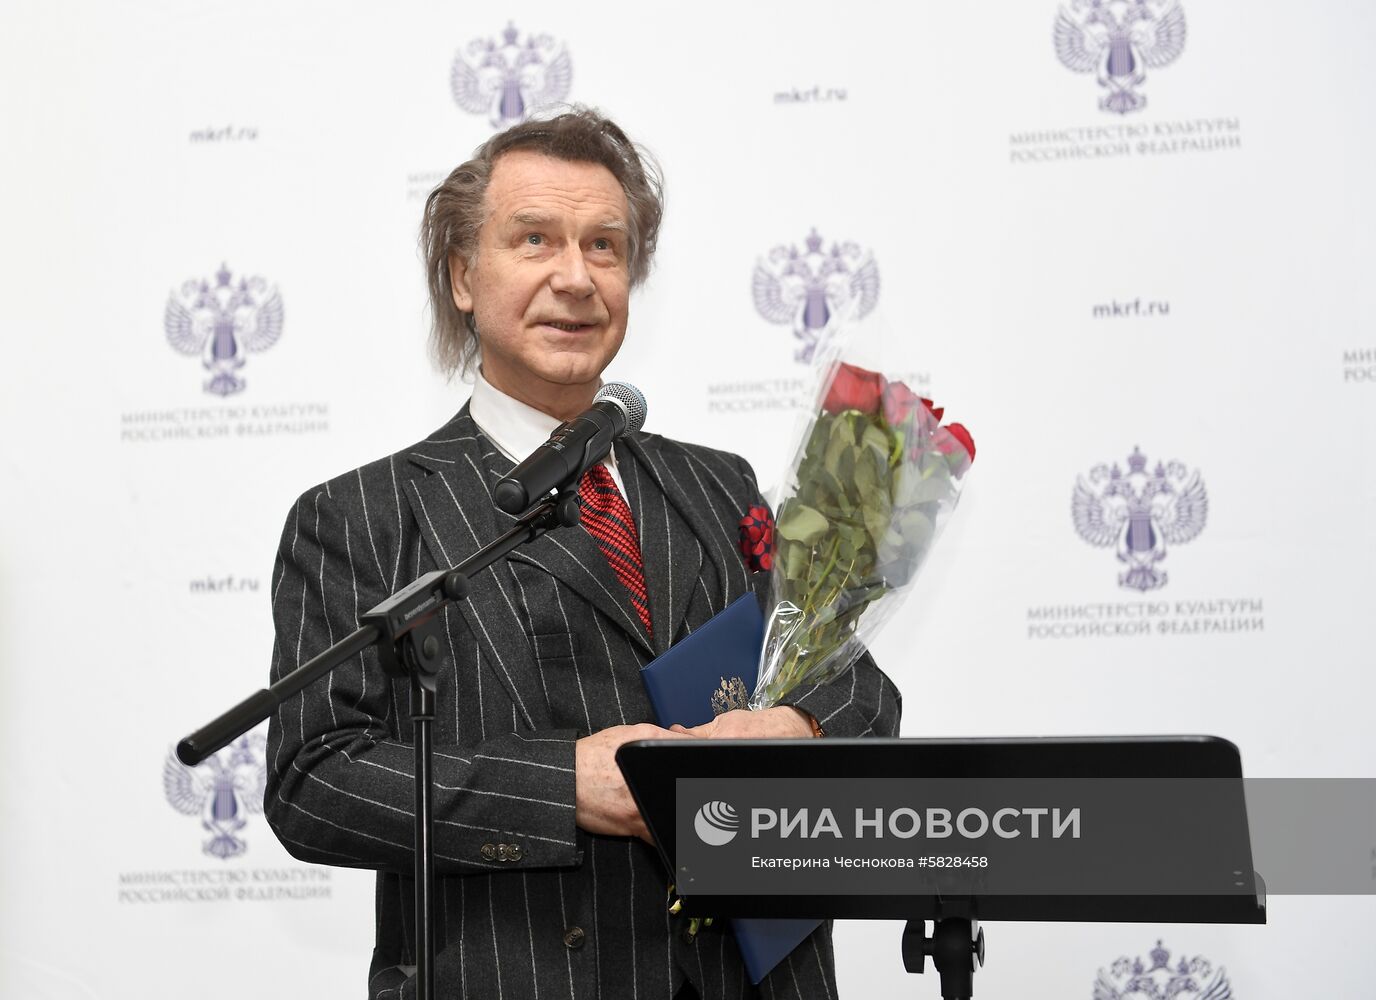 Награждение деятелей культуры и искусства госнаградами РФ